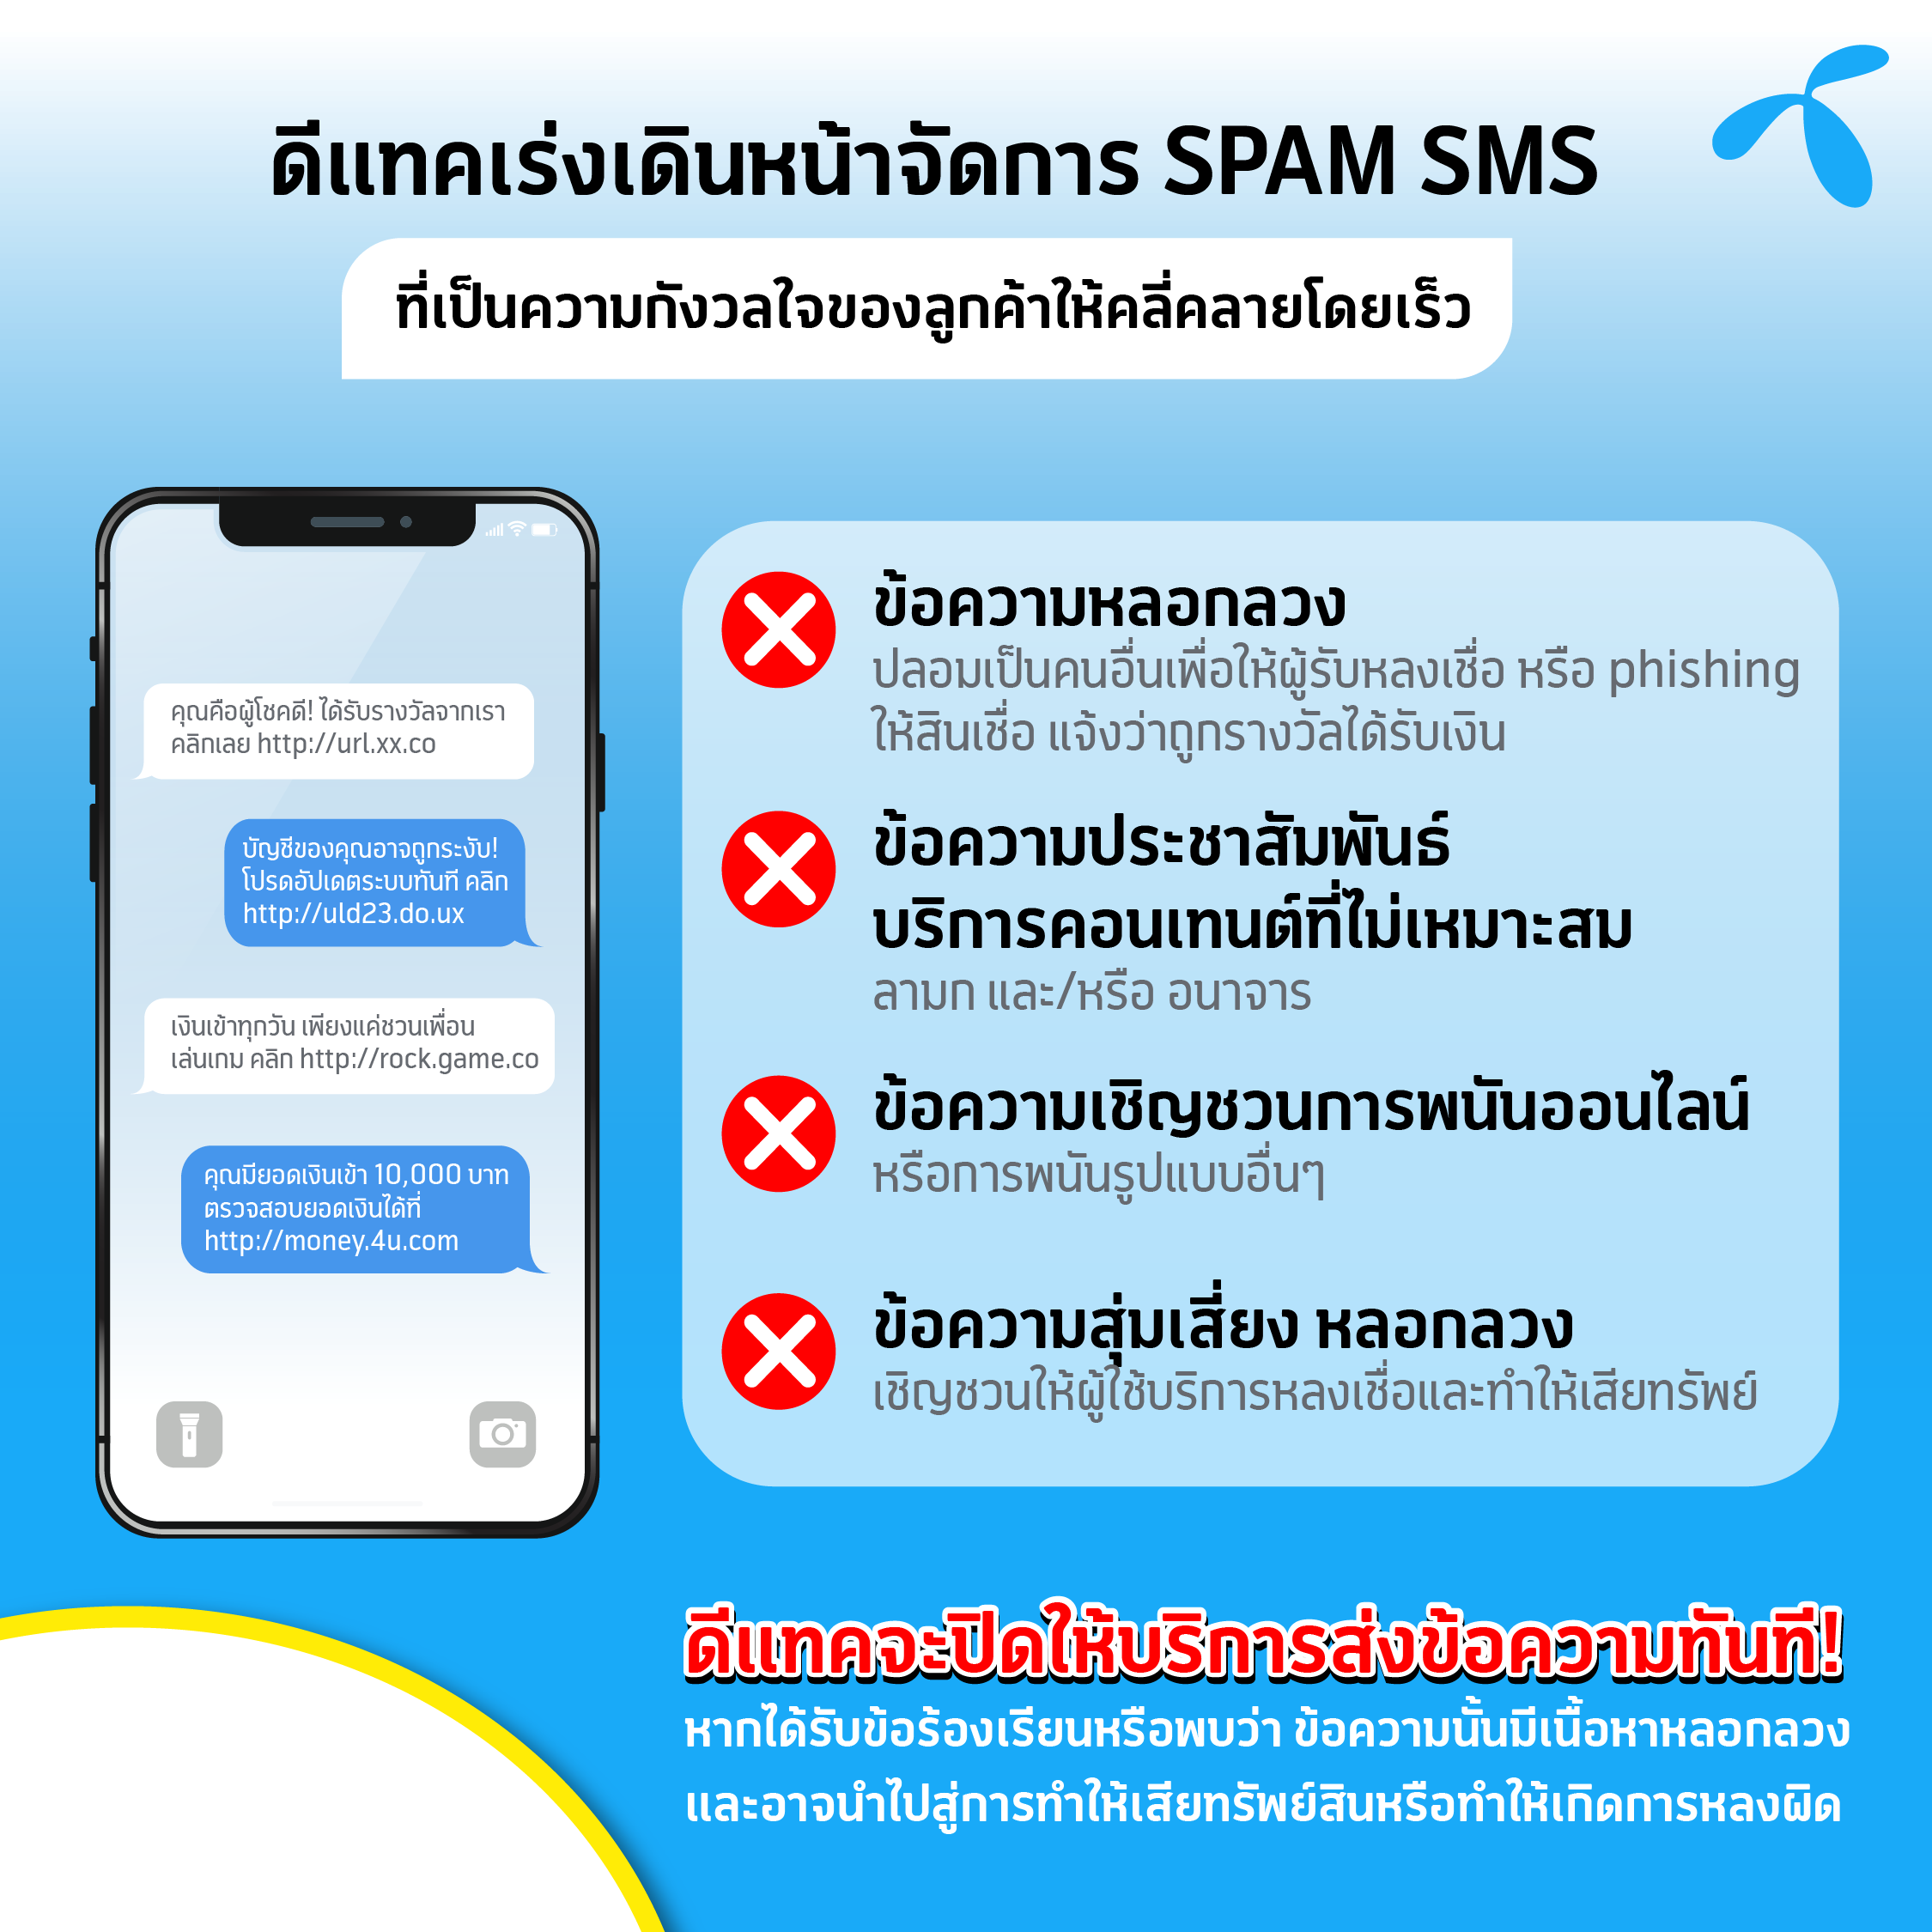 ดีแทคเร่งเดินหน้าจัดการ SPAM SMS ที่เป็นความกังวลใจของลูกค้าให้คลี่คลายโดยเร็ว